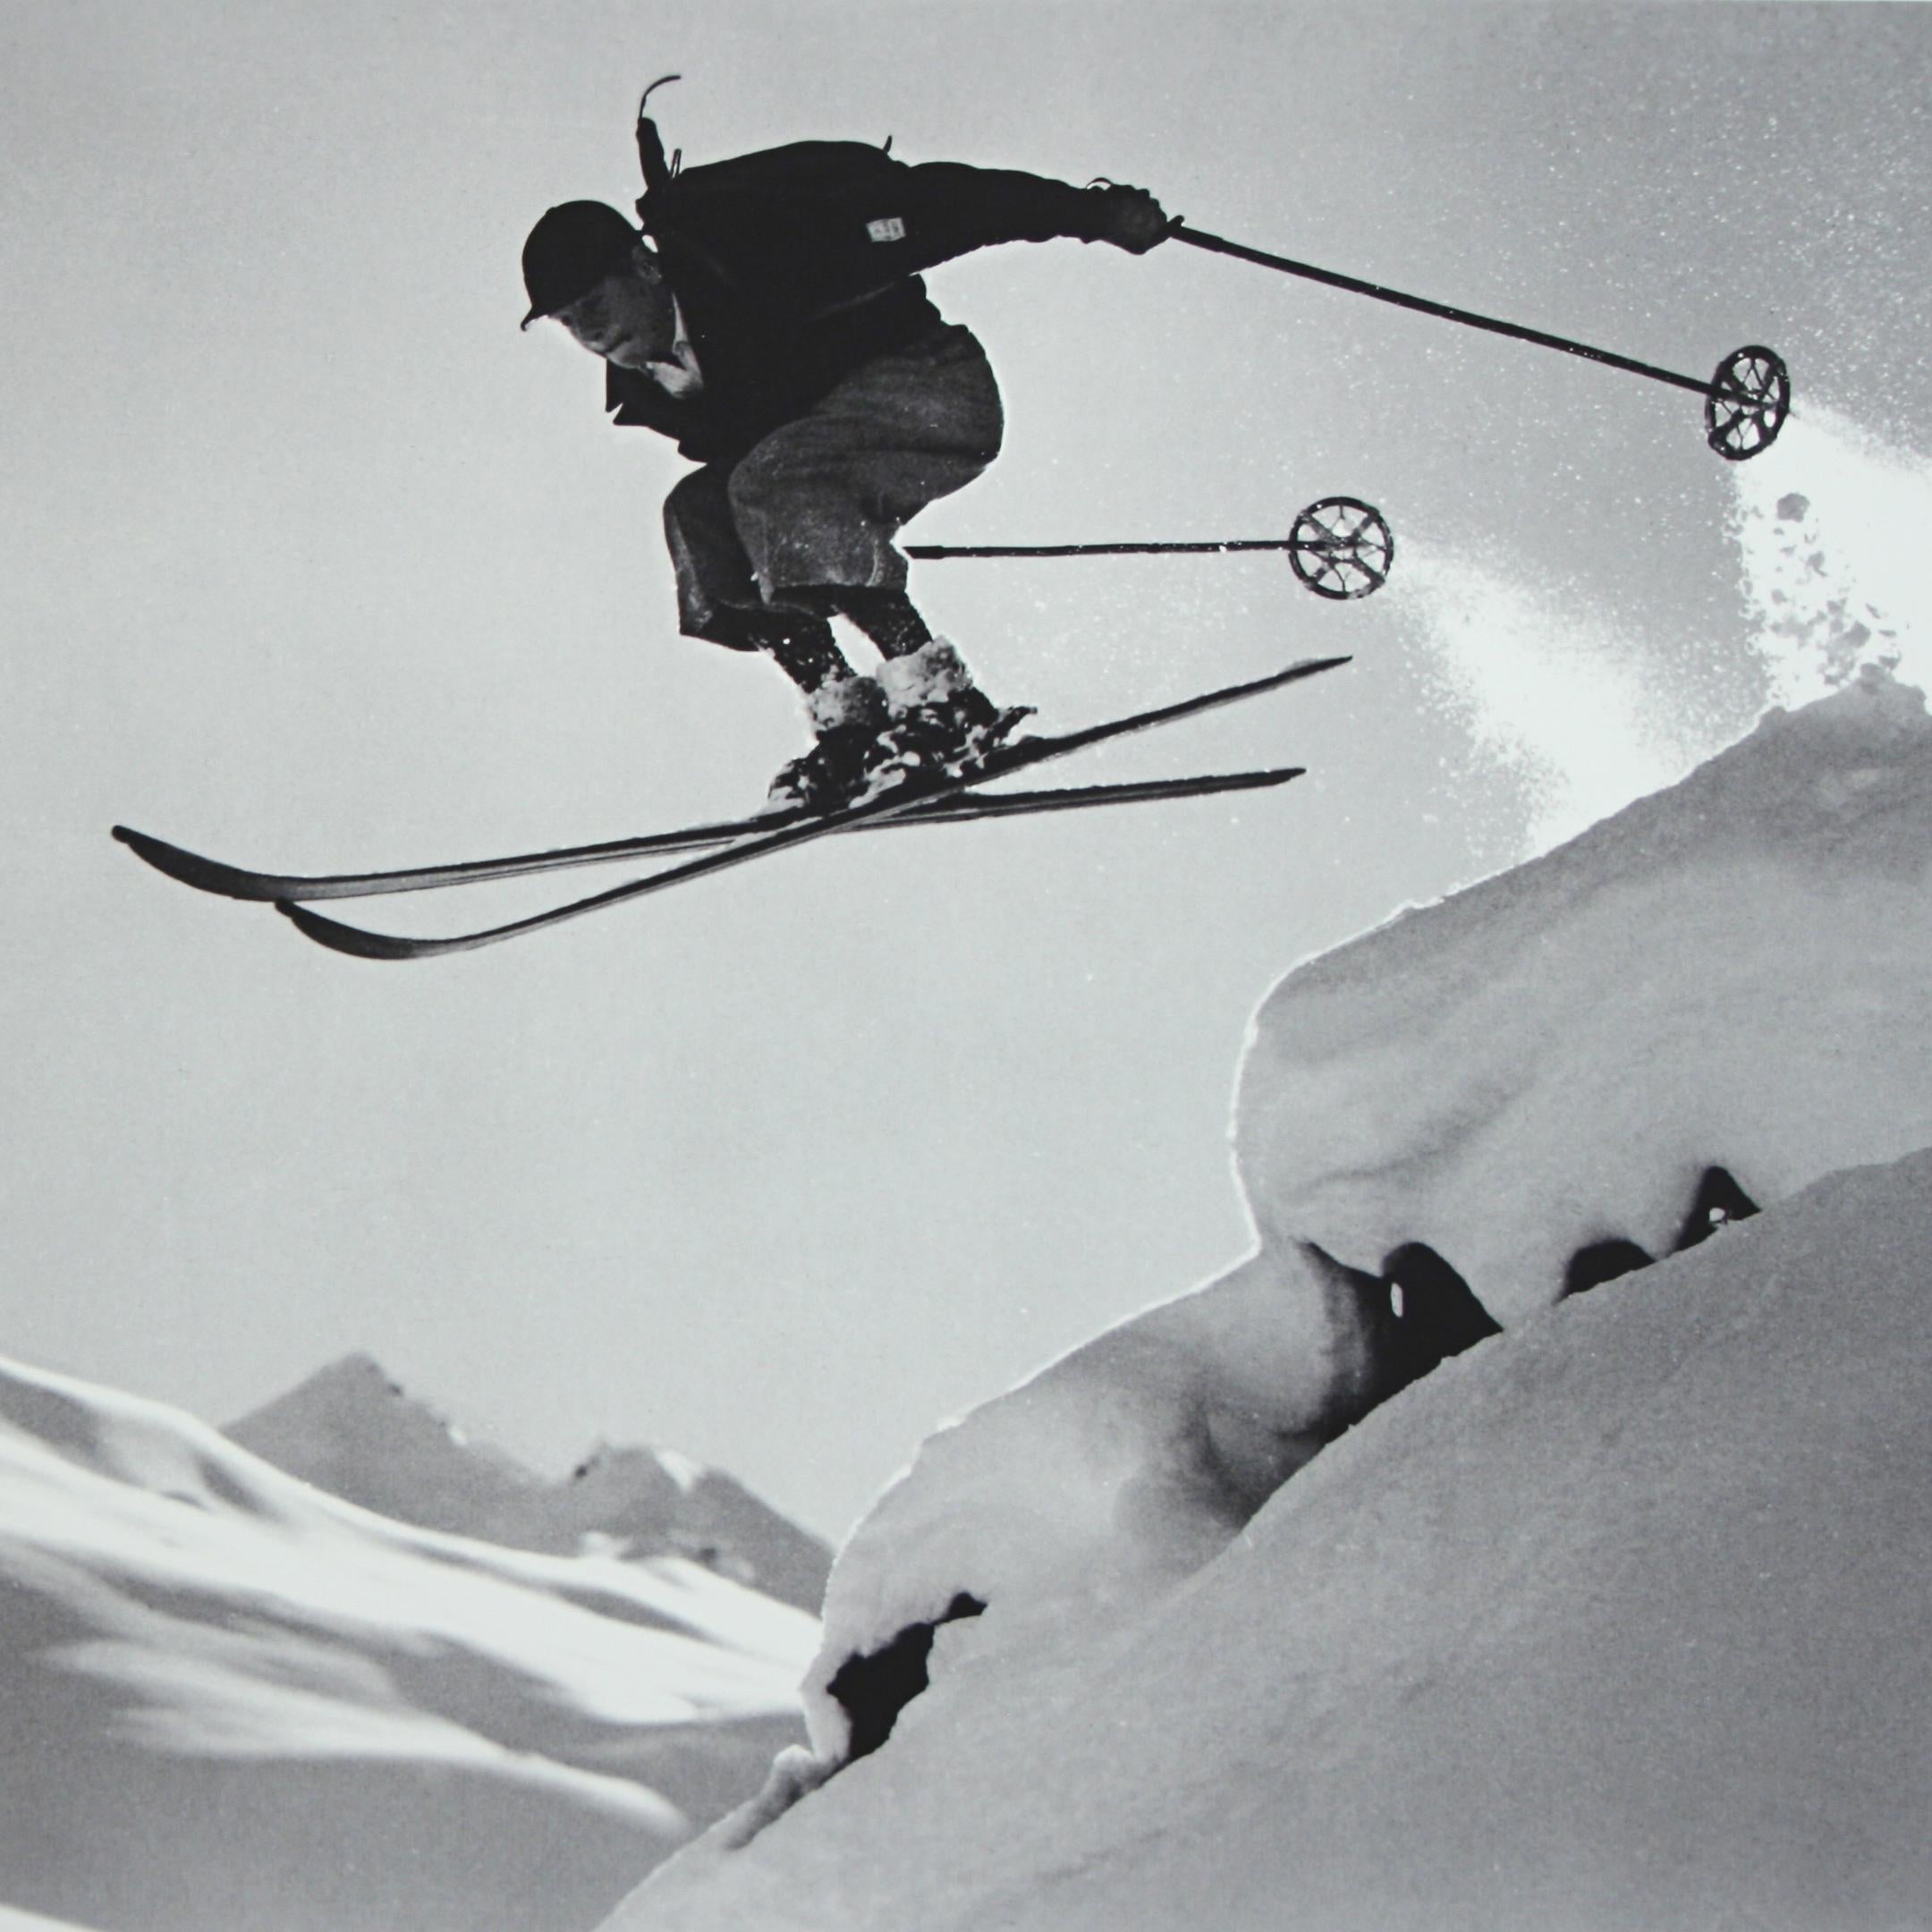 old ski photos